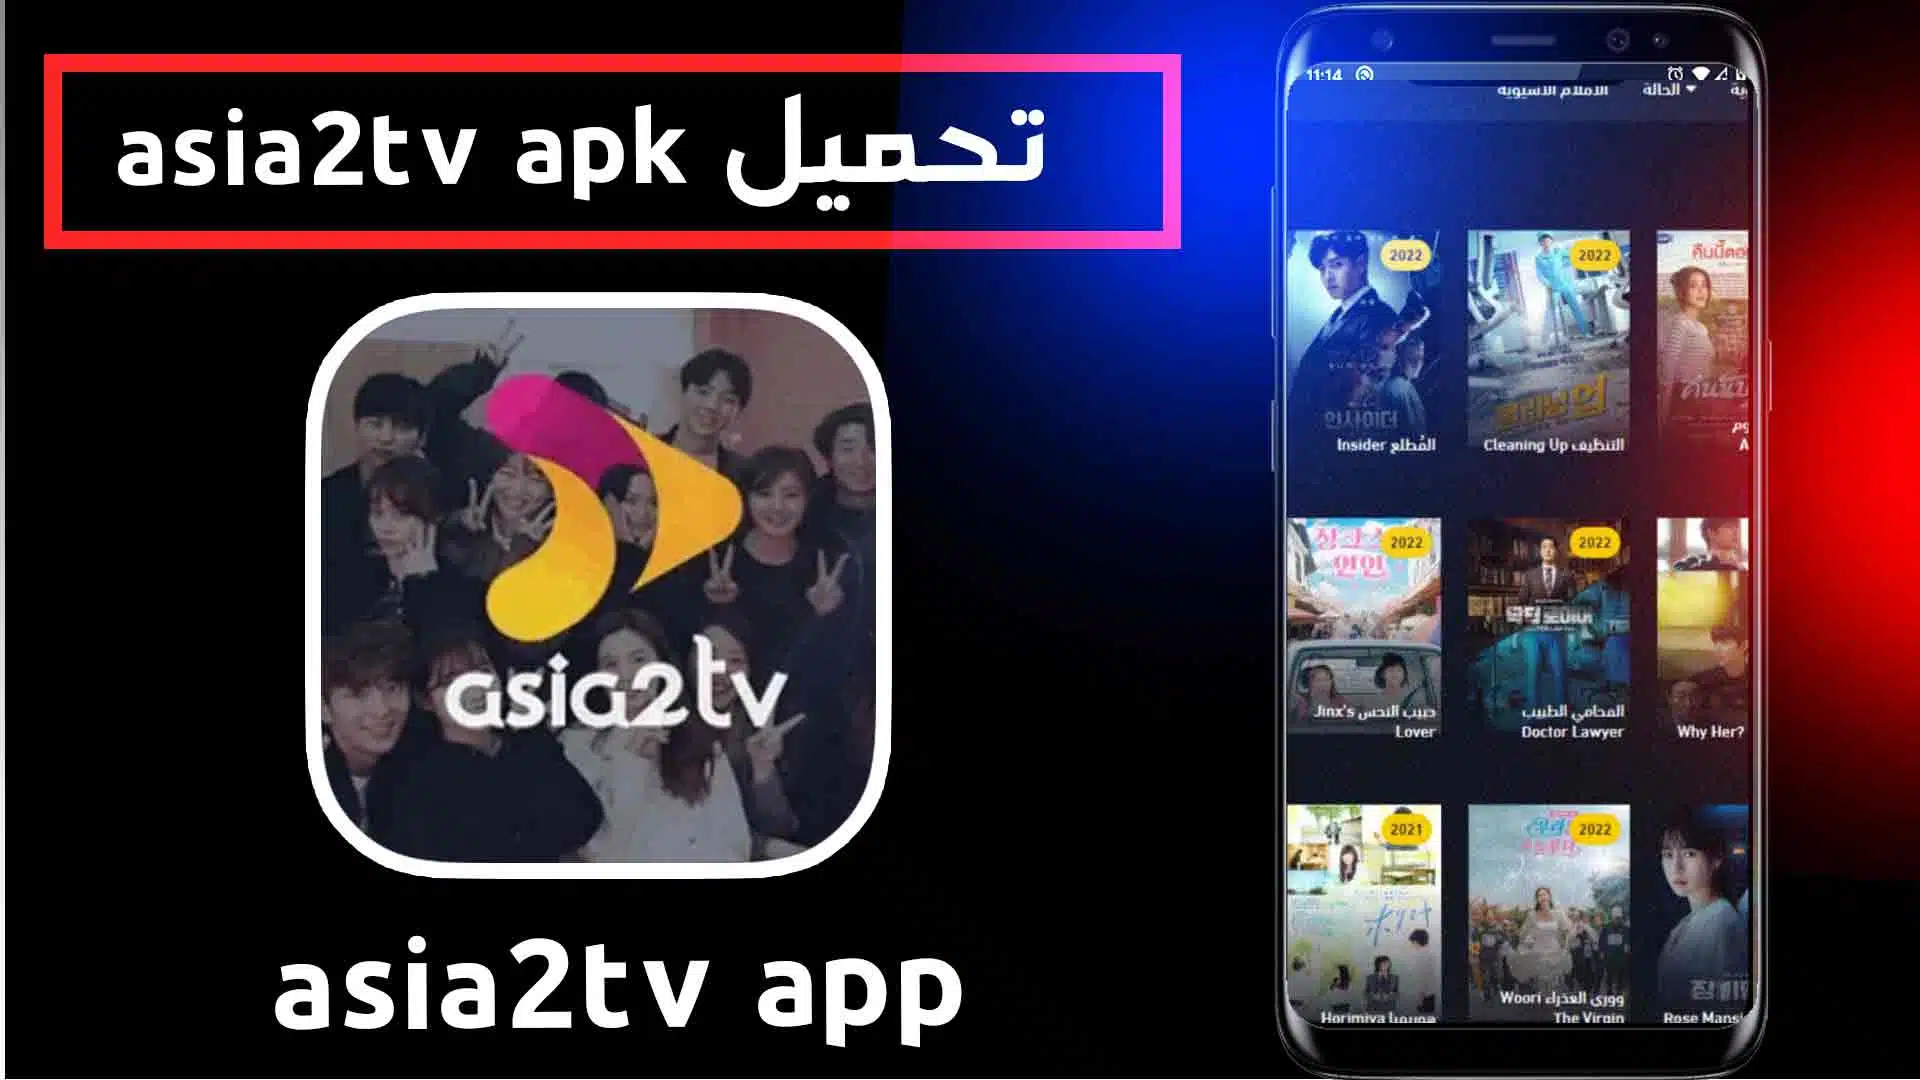 تحميل تطبيق asia2tv apk online مهكر للاندرويد والايفون - موقع اسيا بالعربي 1